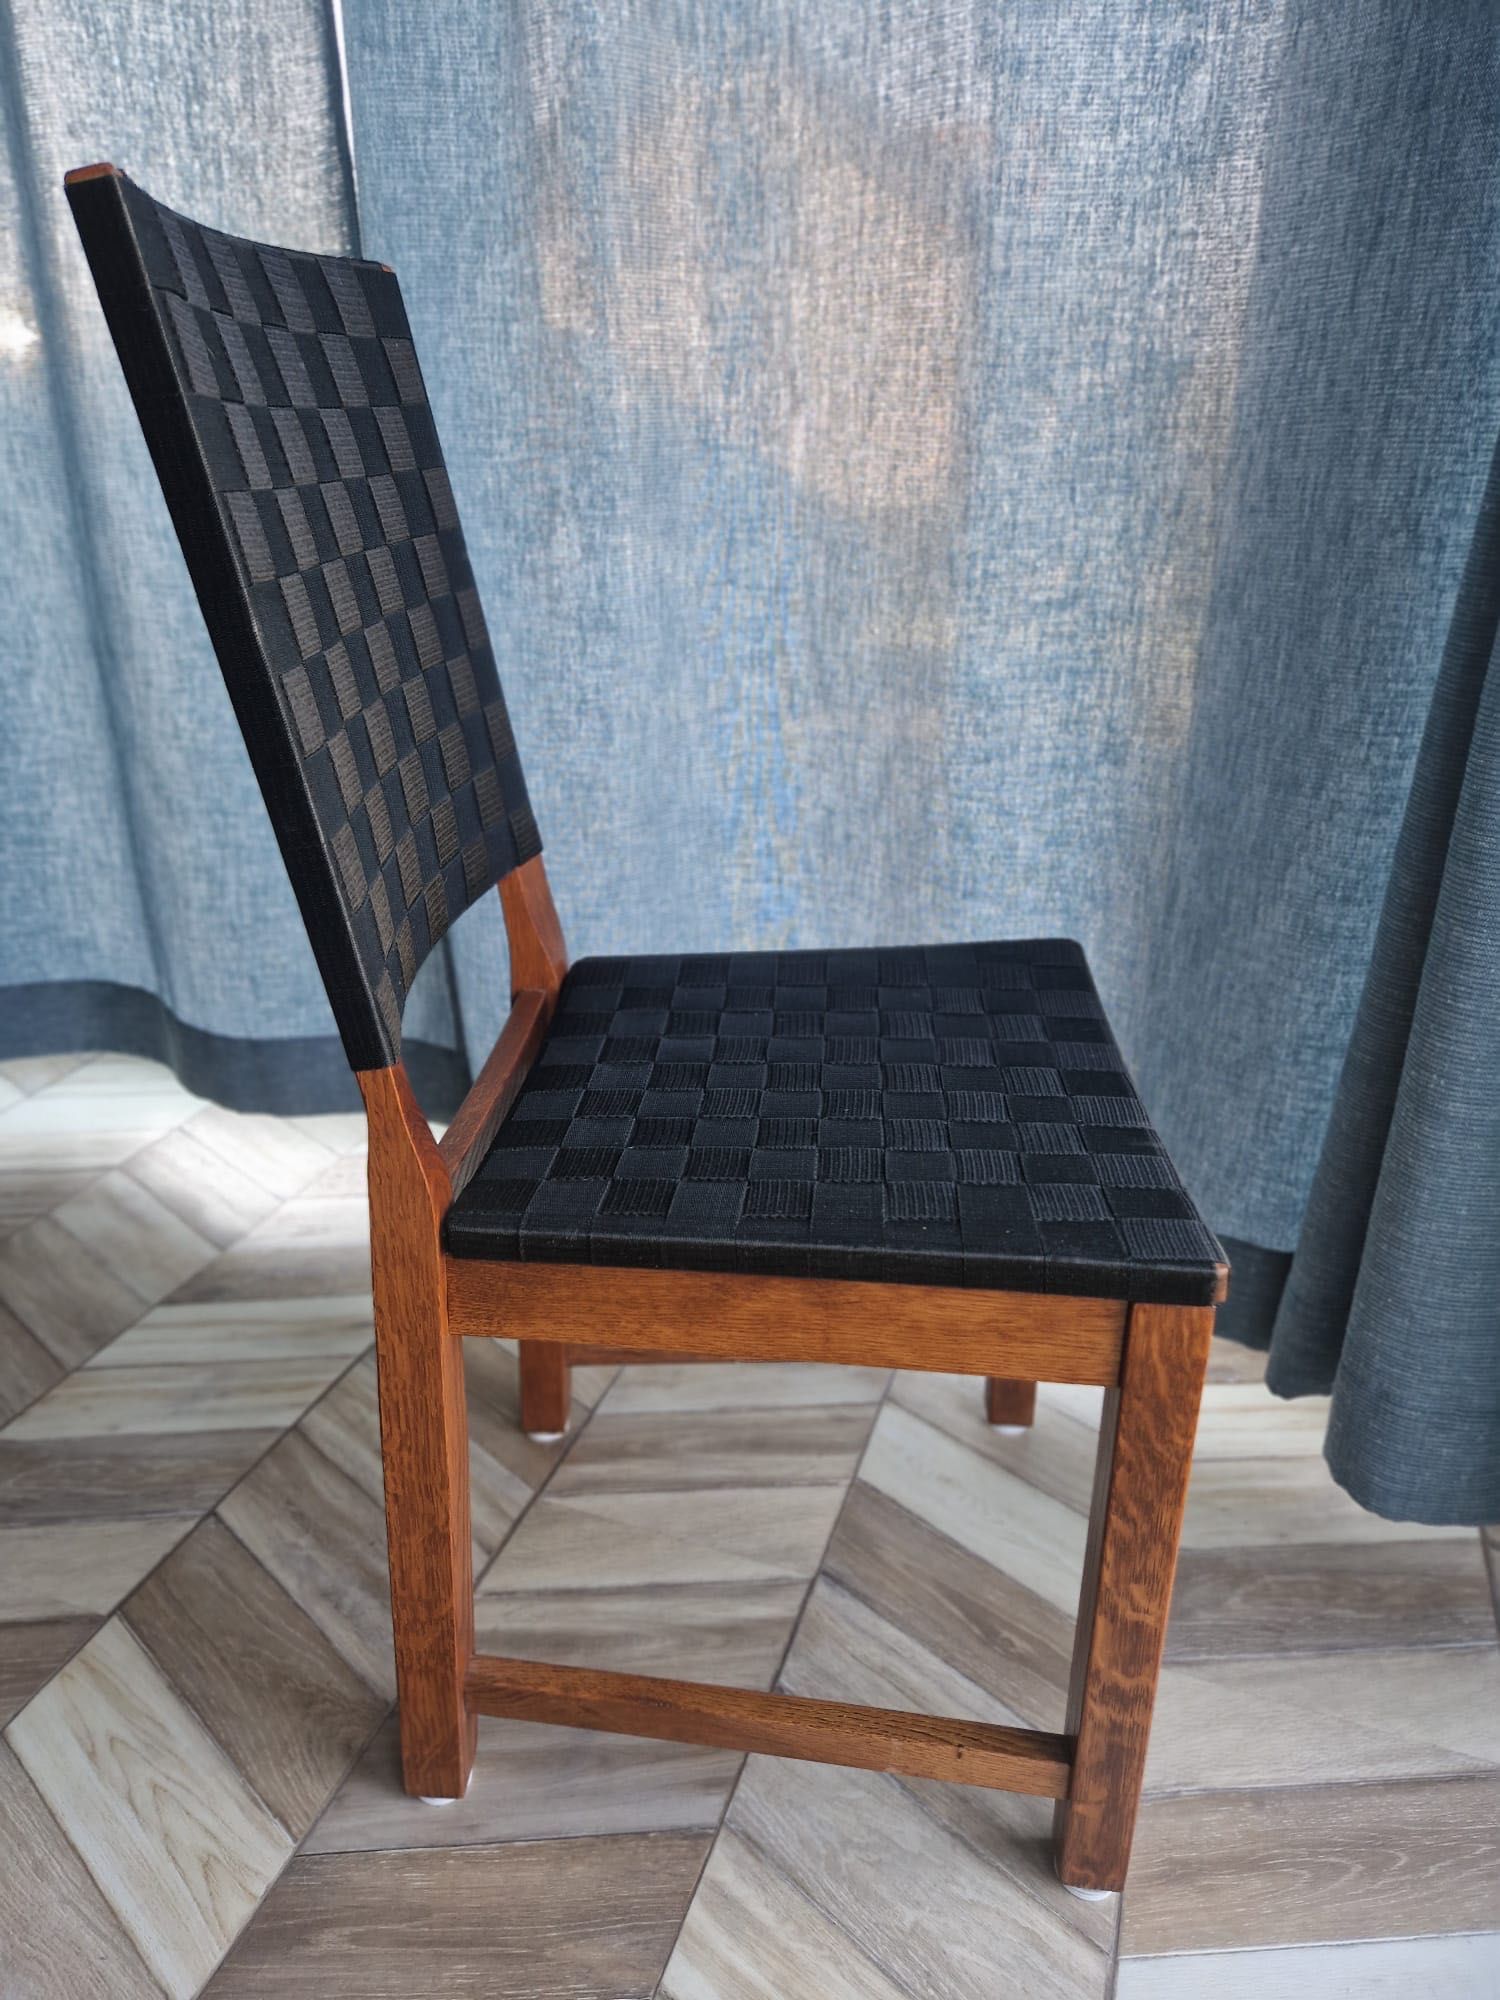 Krzesła drewniane 3 sztuki